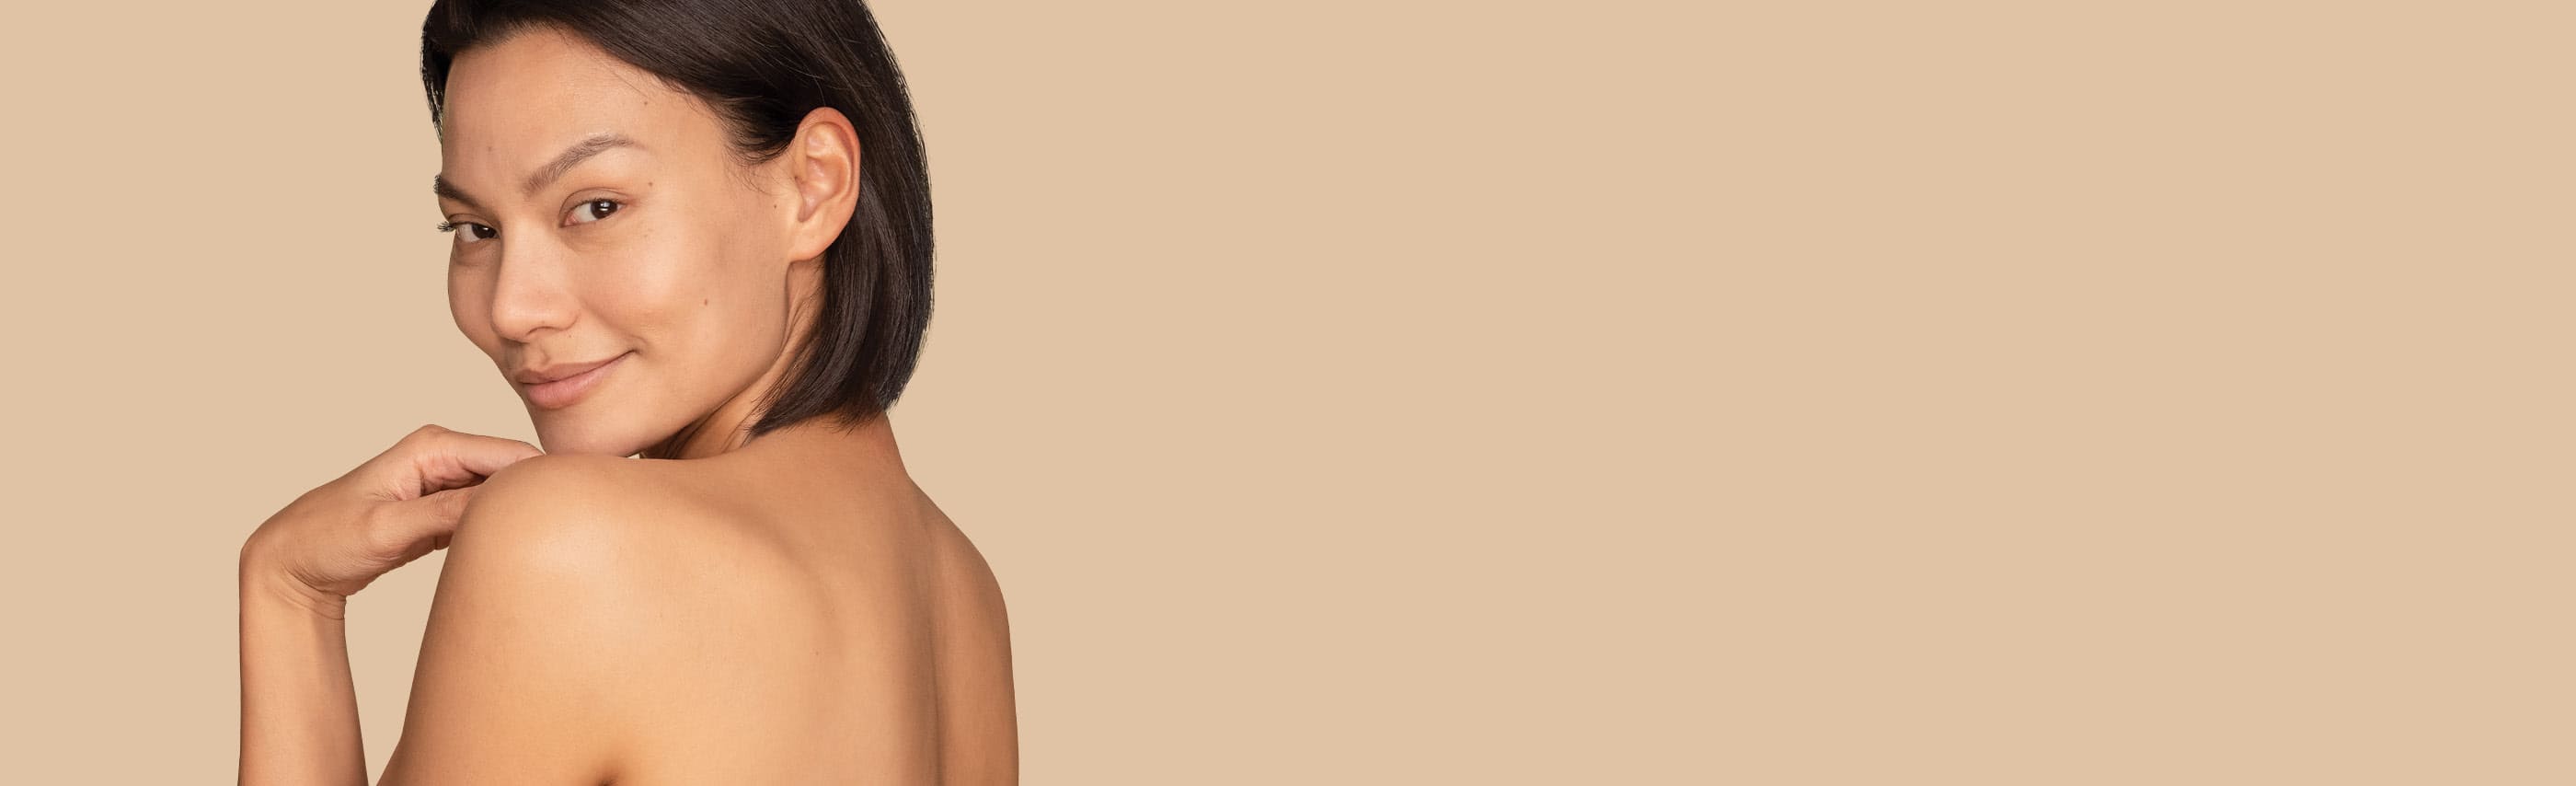 Femme aux cheveux noirs courts et au dos nu regardant par-dessus son épaule gauche en souriant.